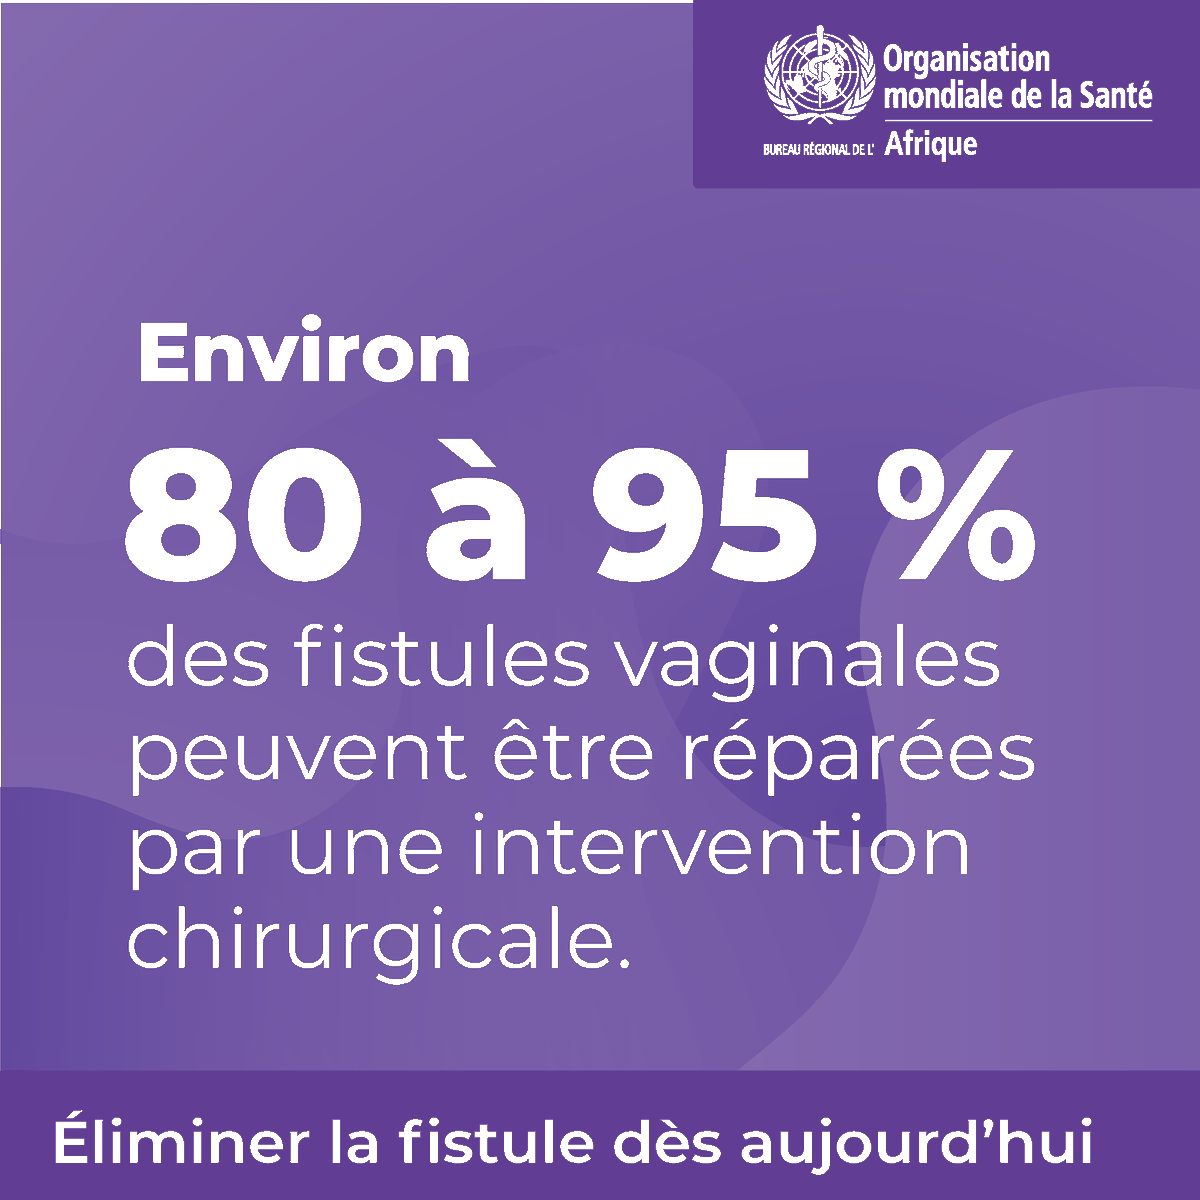 Une intervention chirurgicale peut changer la vie de nombreuses femmes souffrant de #FistuleObstétricale, avec un taux de réparation de 80 à 95 % dans la fermeture des fistules vaginales. Ce traitement rétablit la santé & la dignité des femmes. #ÉliminerLaFistule #SantéMaternelle